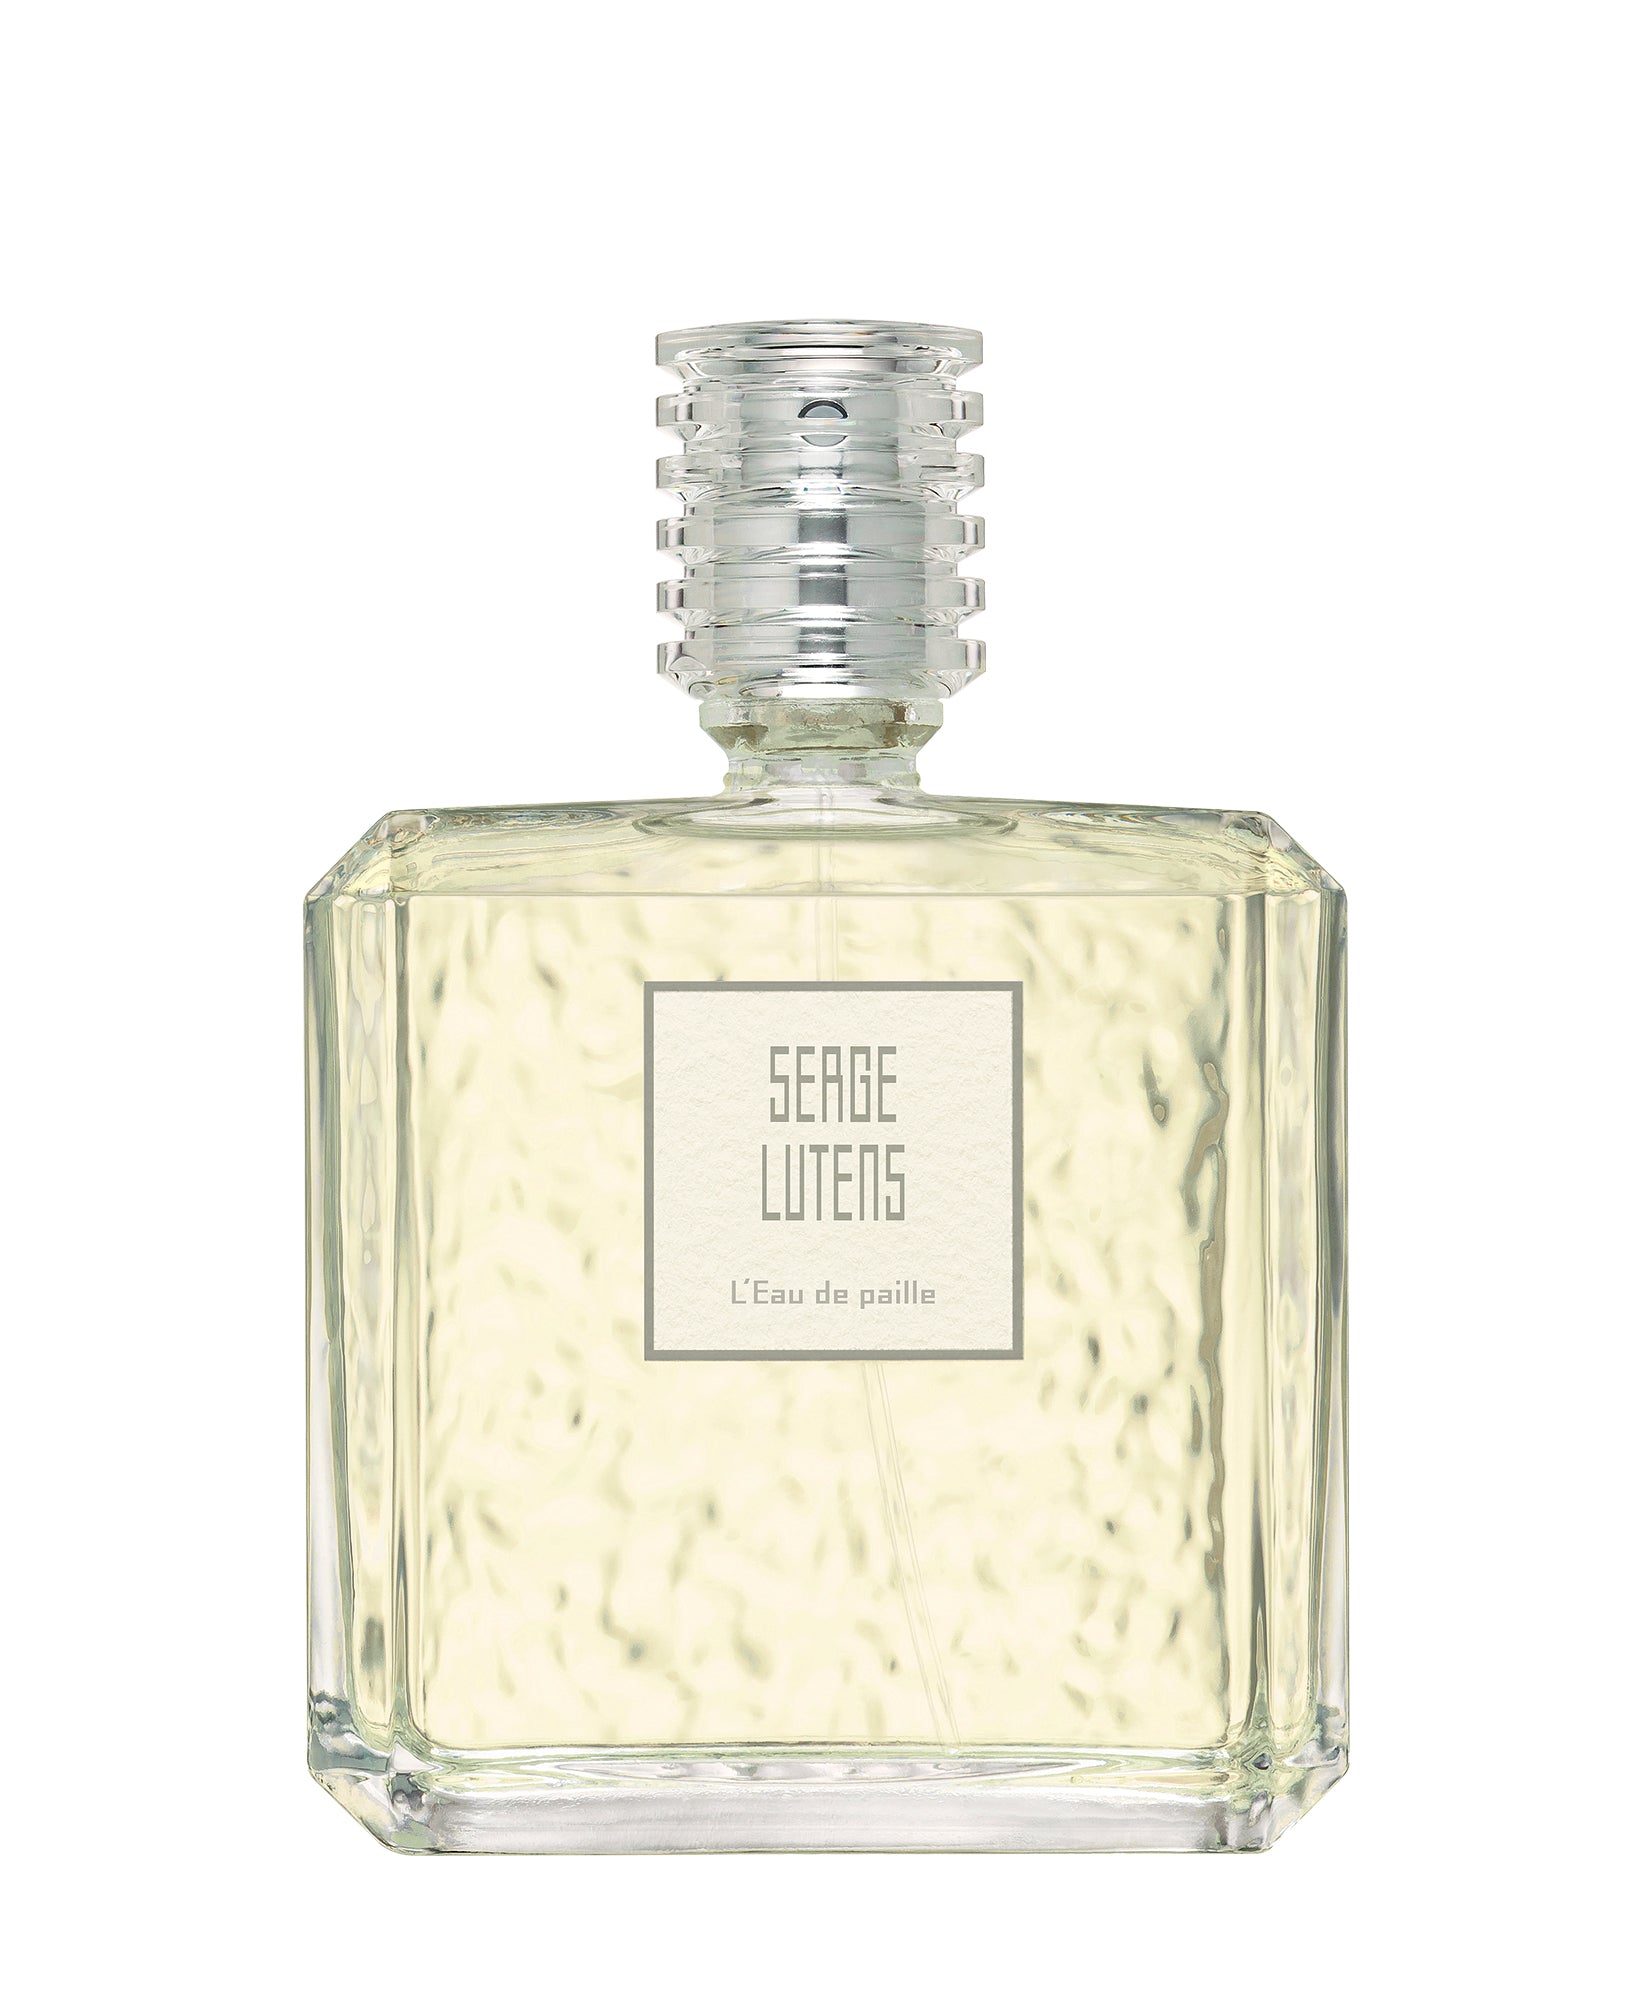 Parfum L'Eau de paille 100 ml Serge Lutens